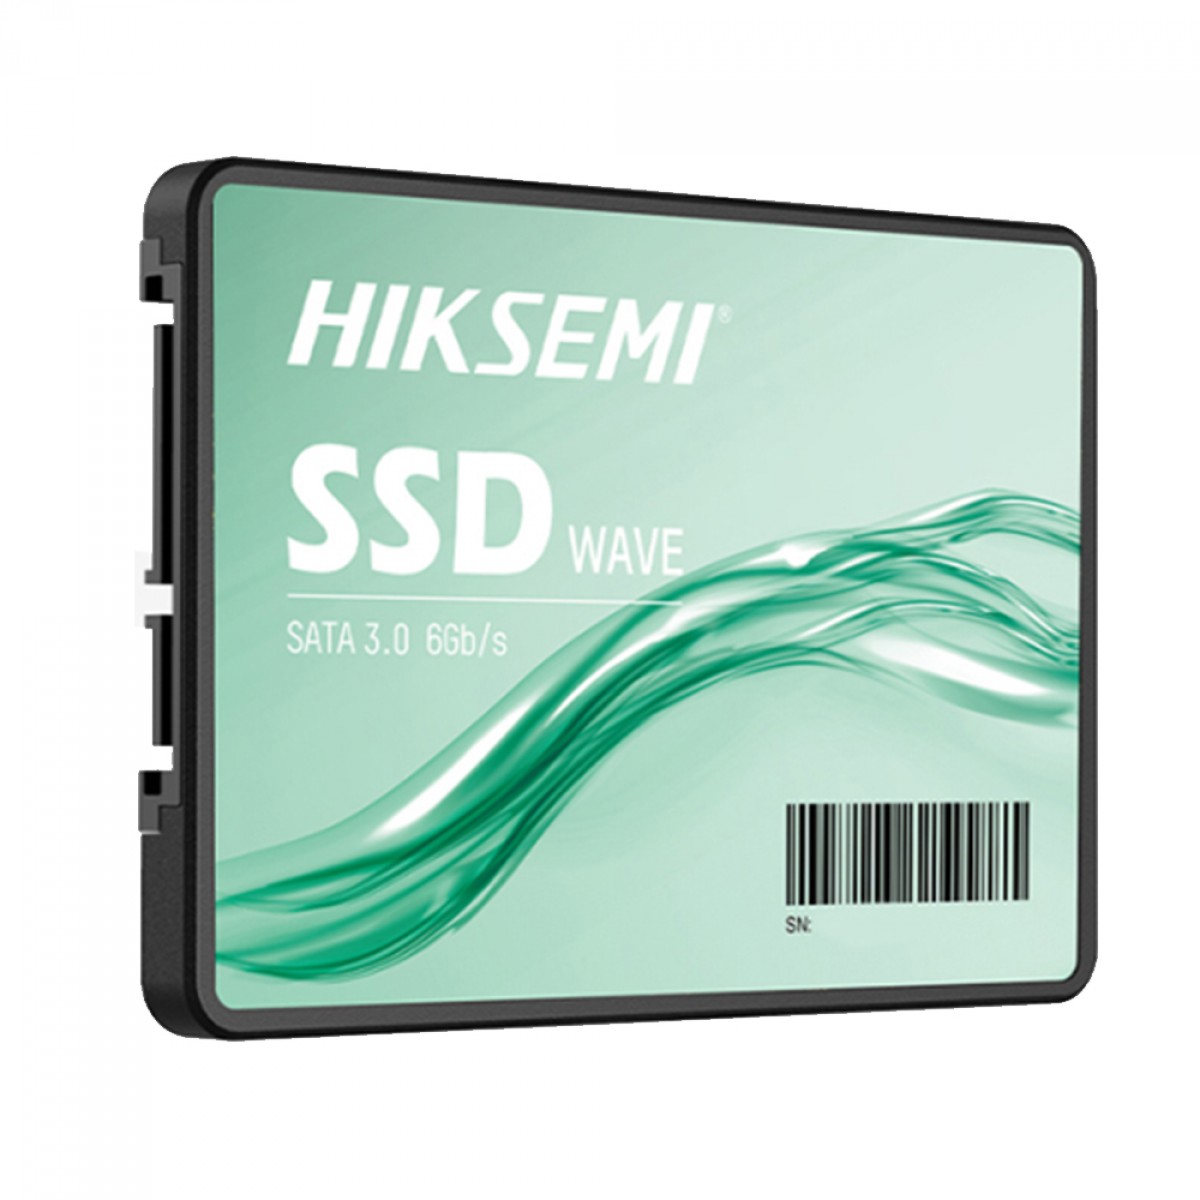 SSD Hiksemi Wave(S) 256GB, Sata III, Leitura 530MBs e Gravação 400MBs, HS-SSD-WAVE(S) 256G